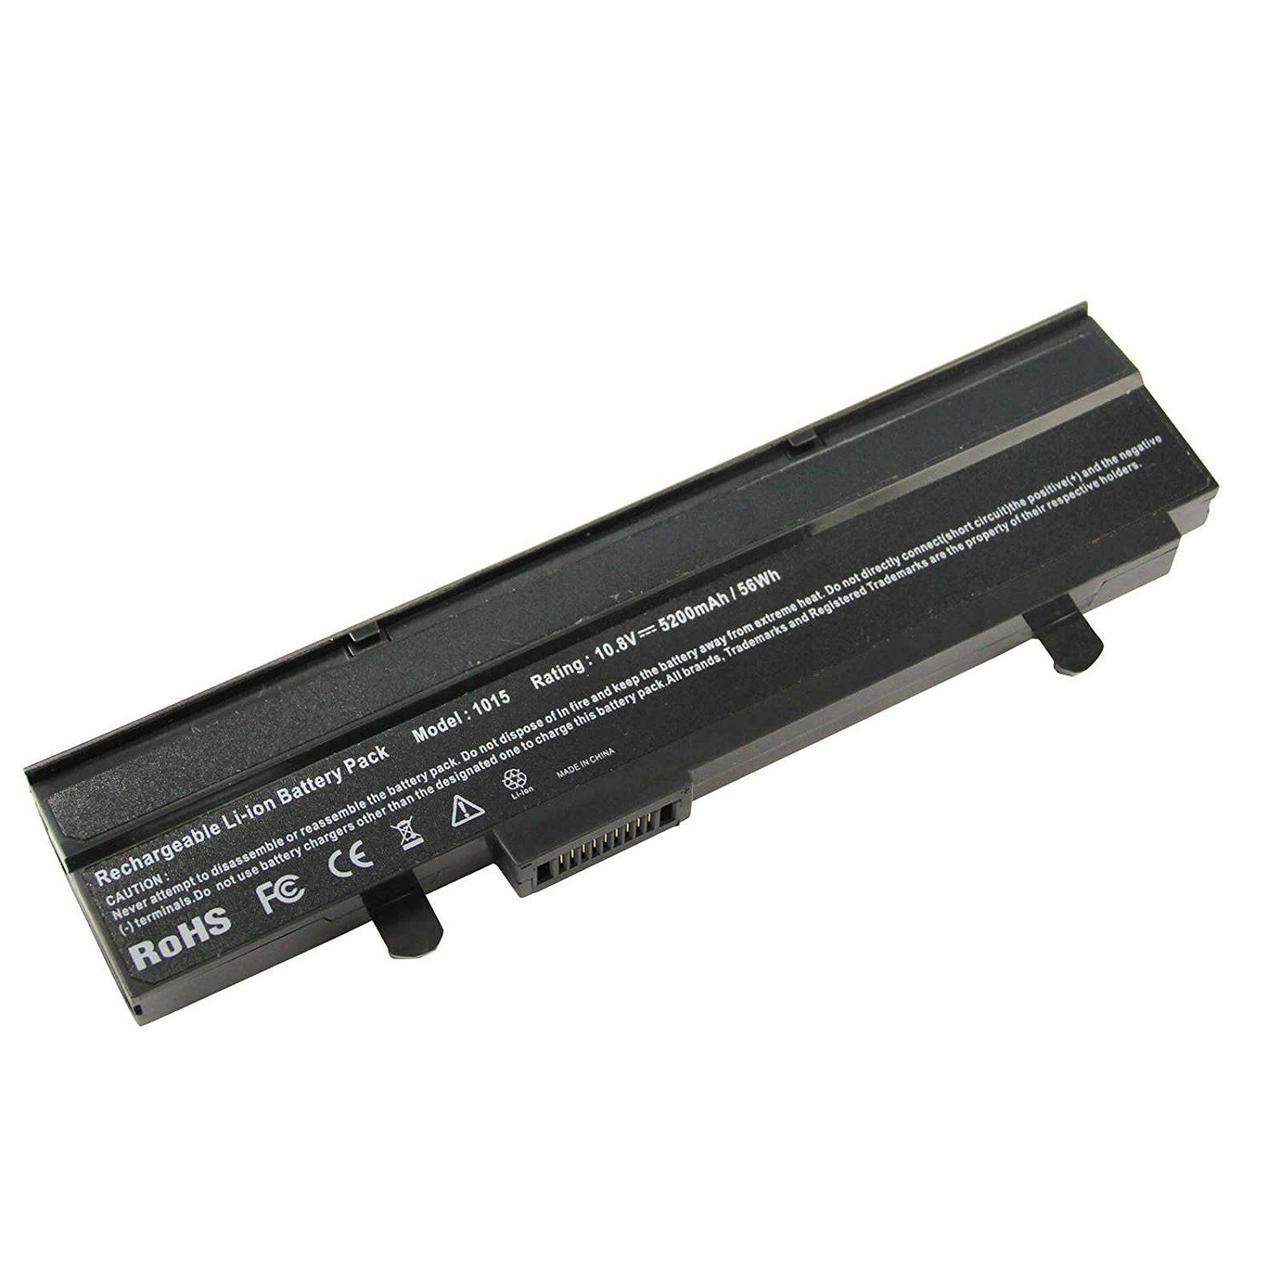 Аккумулятор для ноутбука Asus Eee Pc 1015, A32-1015 (10.8V, 4400 mAh)